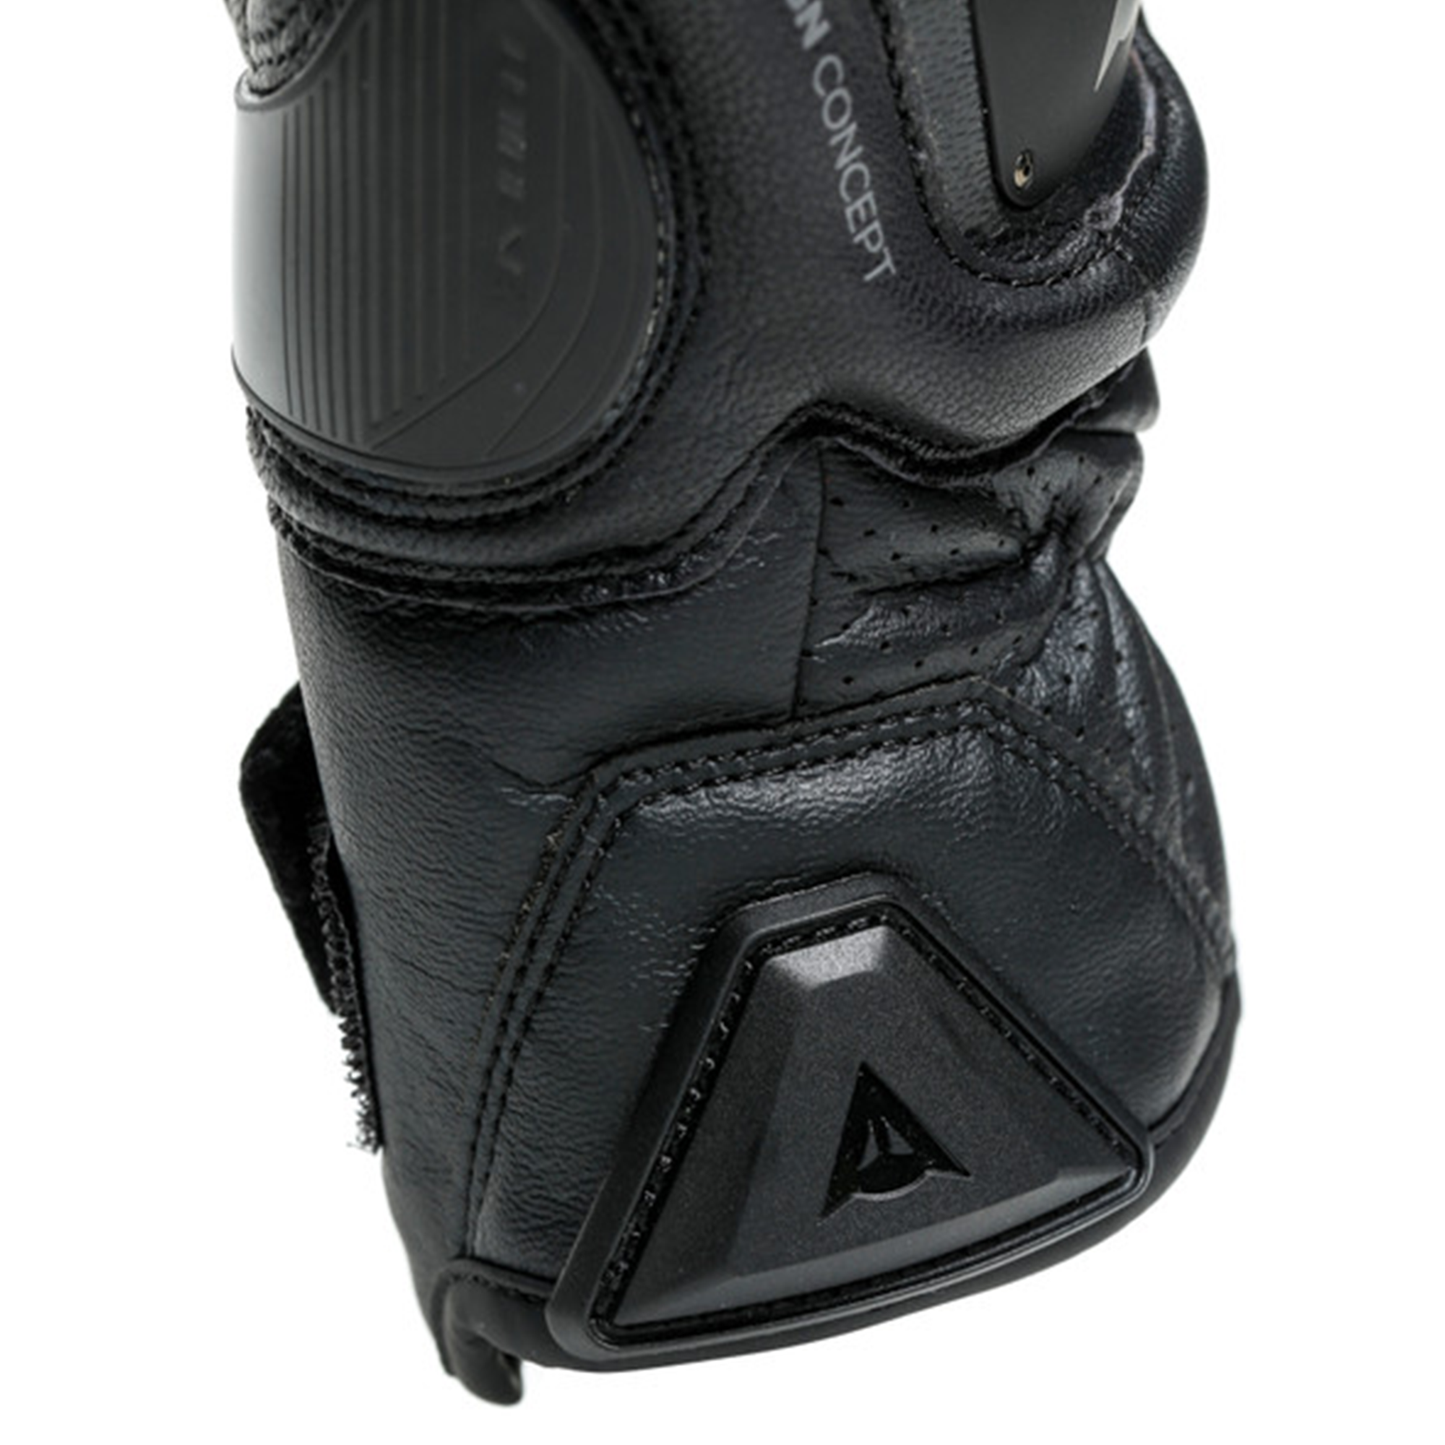 Dainese 4-Stroke 2 Gloves - Black